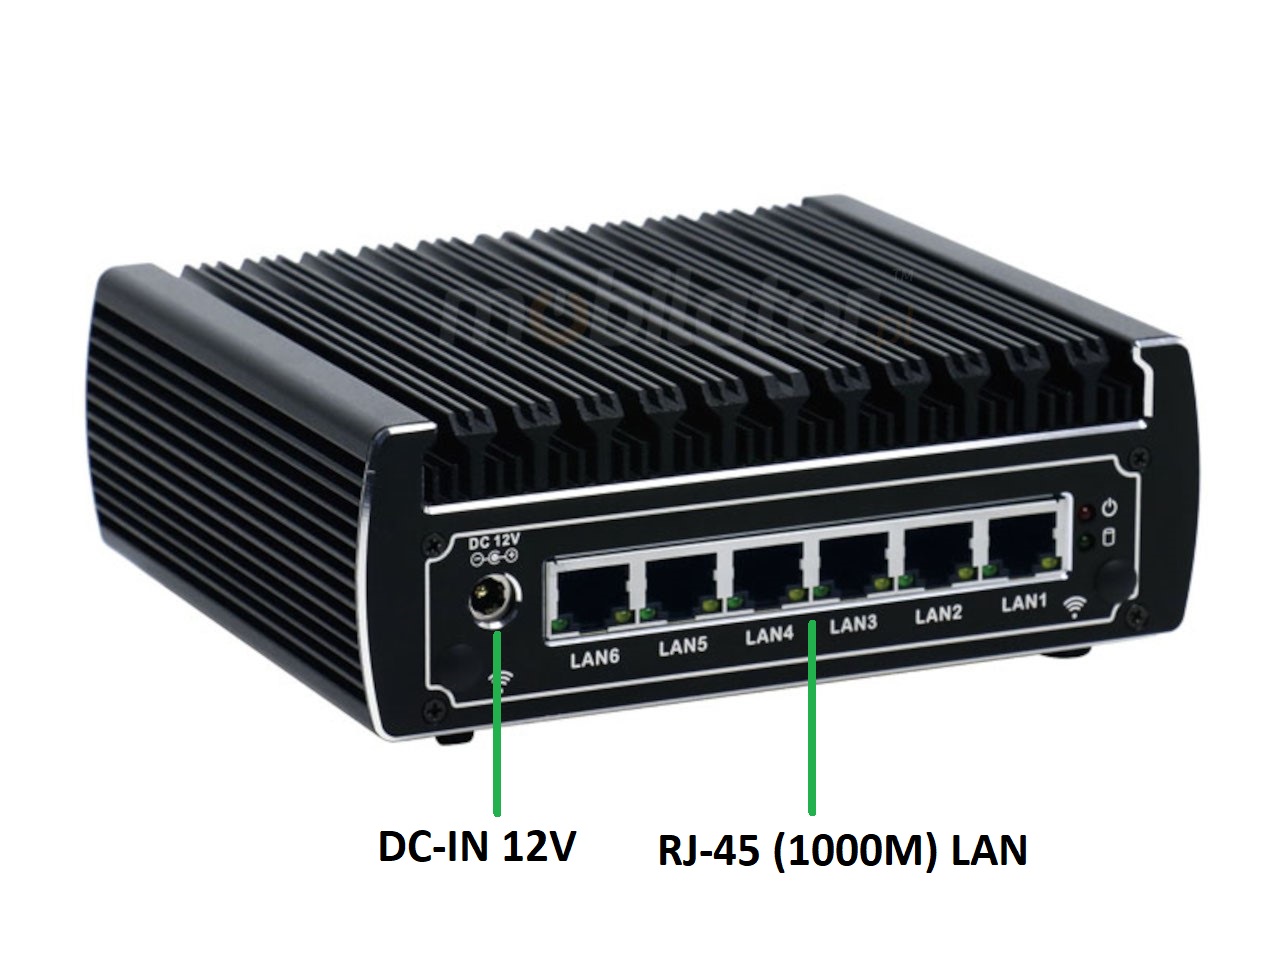   IBOX N133  v.12, zcza ty SSD DDR4 WIFI BLUETOOTH , przemysowy, may, szybki, niezawodny, fanless, industrial, small, LAN, INTEL i3